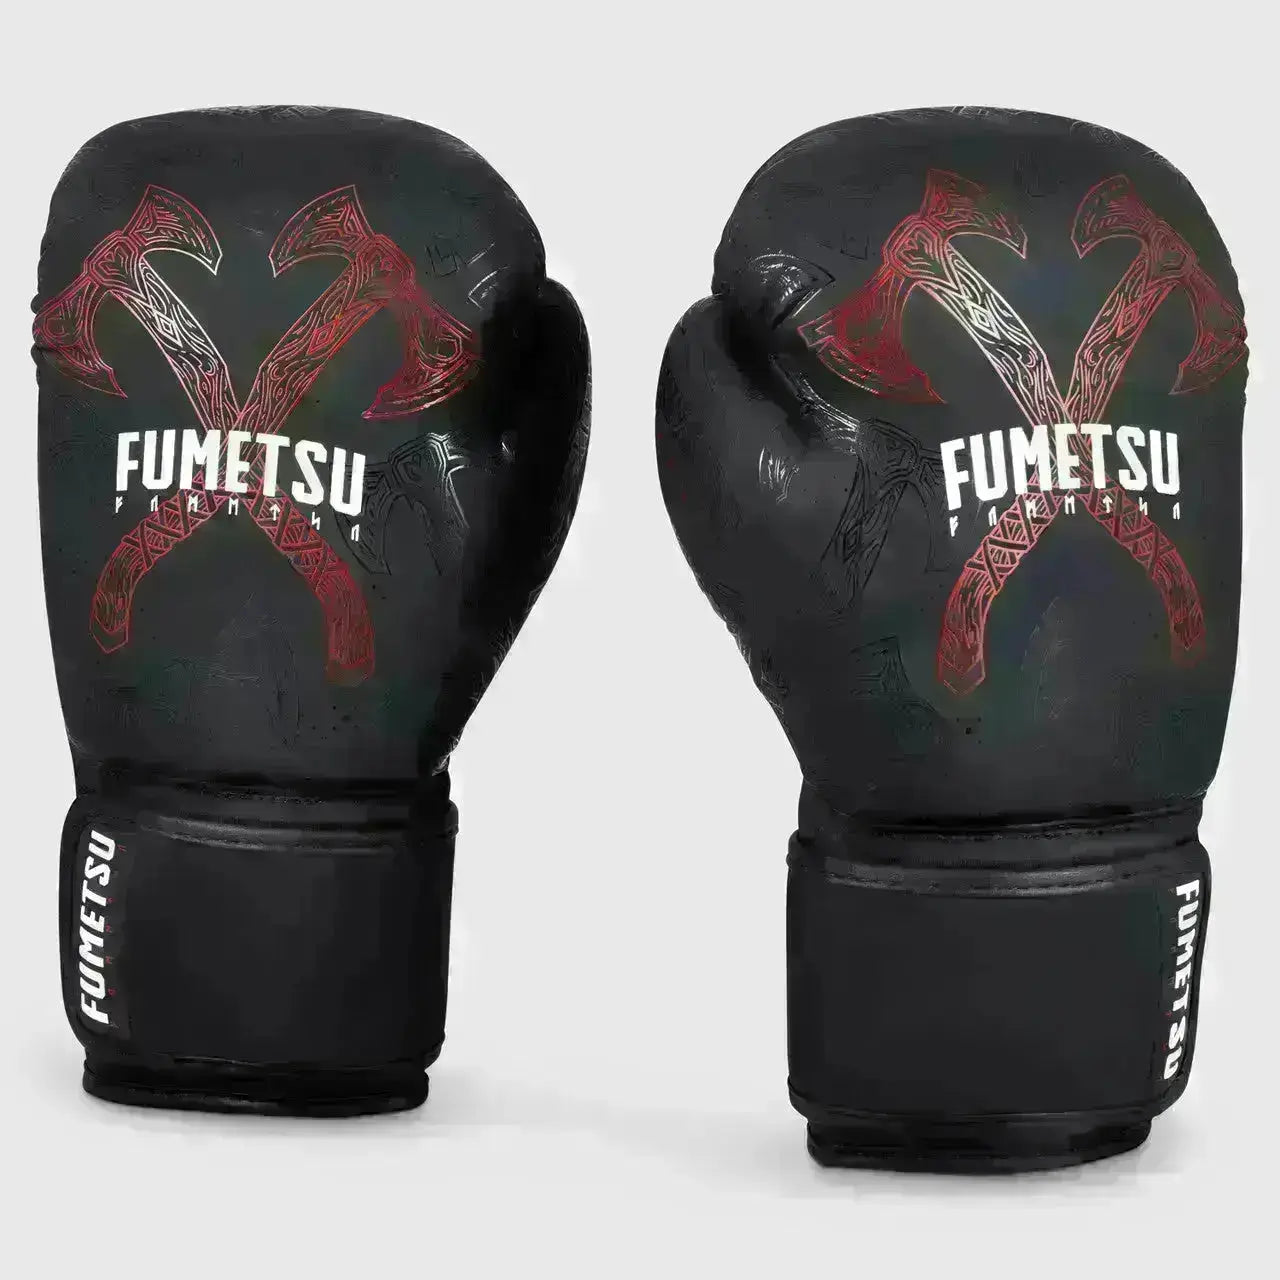 Fumetsu Berserker Boxing Gloves  Fight Co